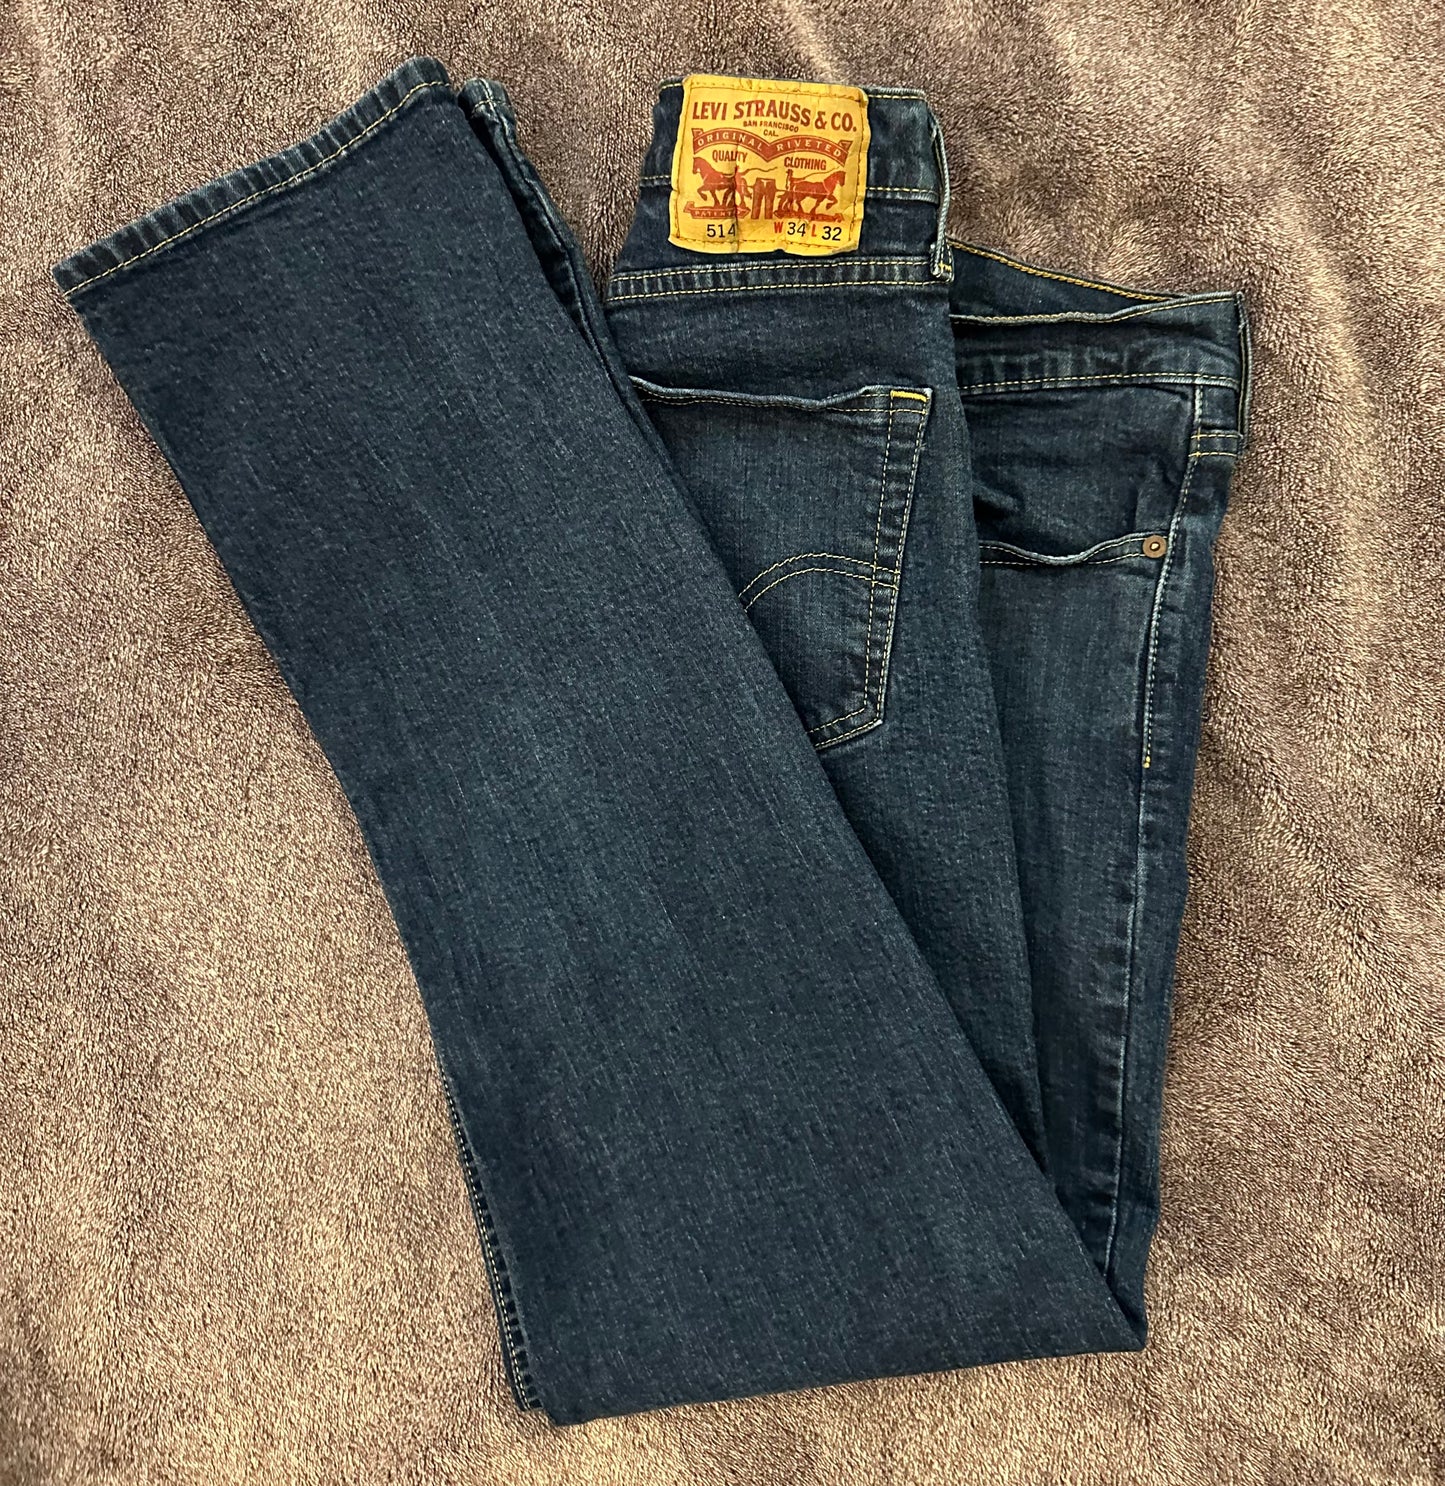 Levi’s jeans mens size 34 x 32